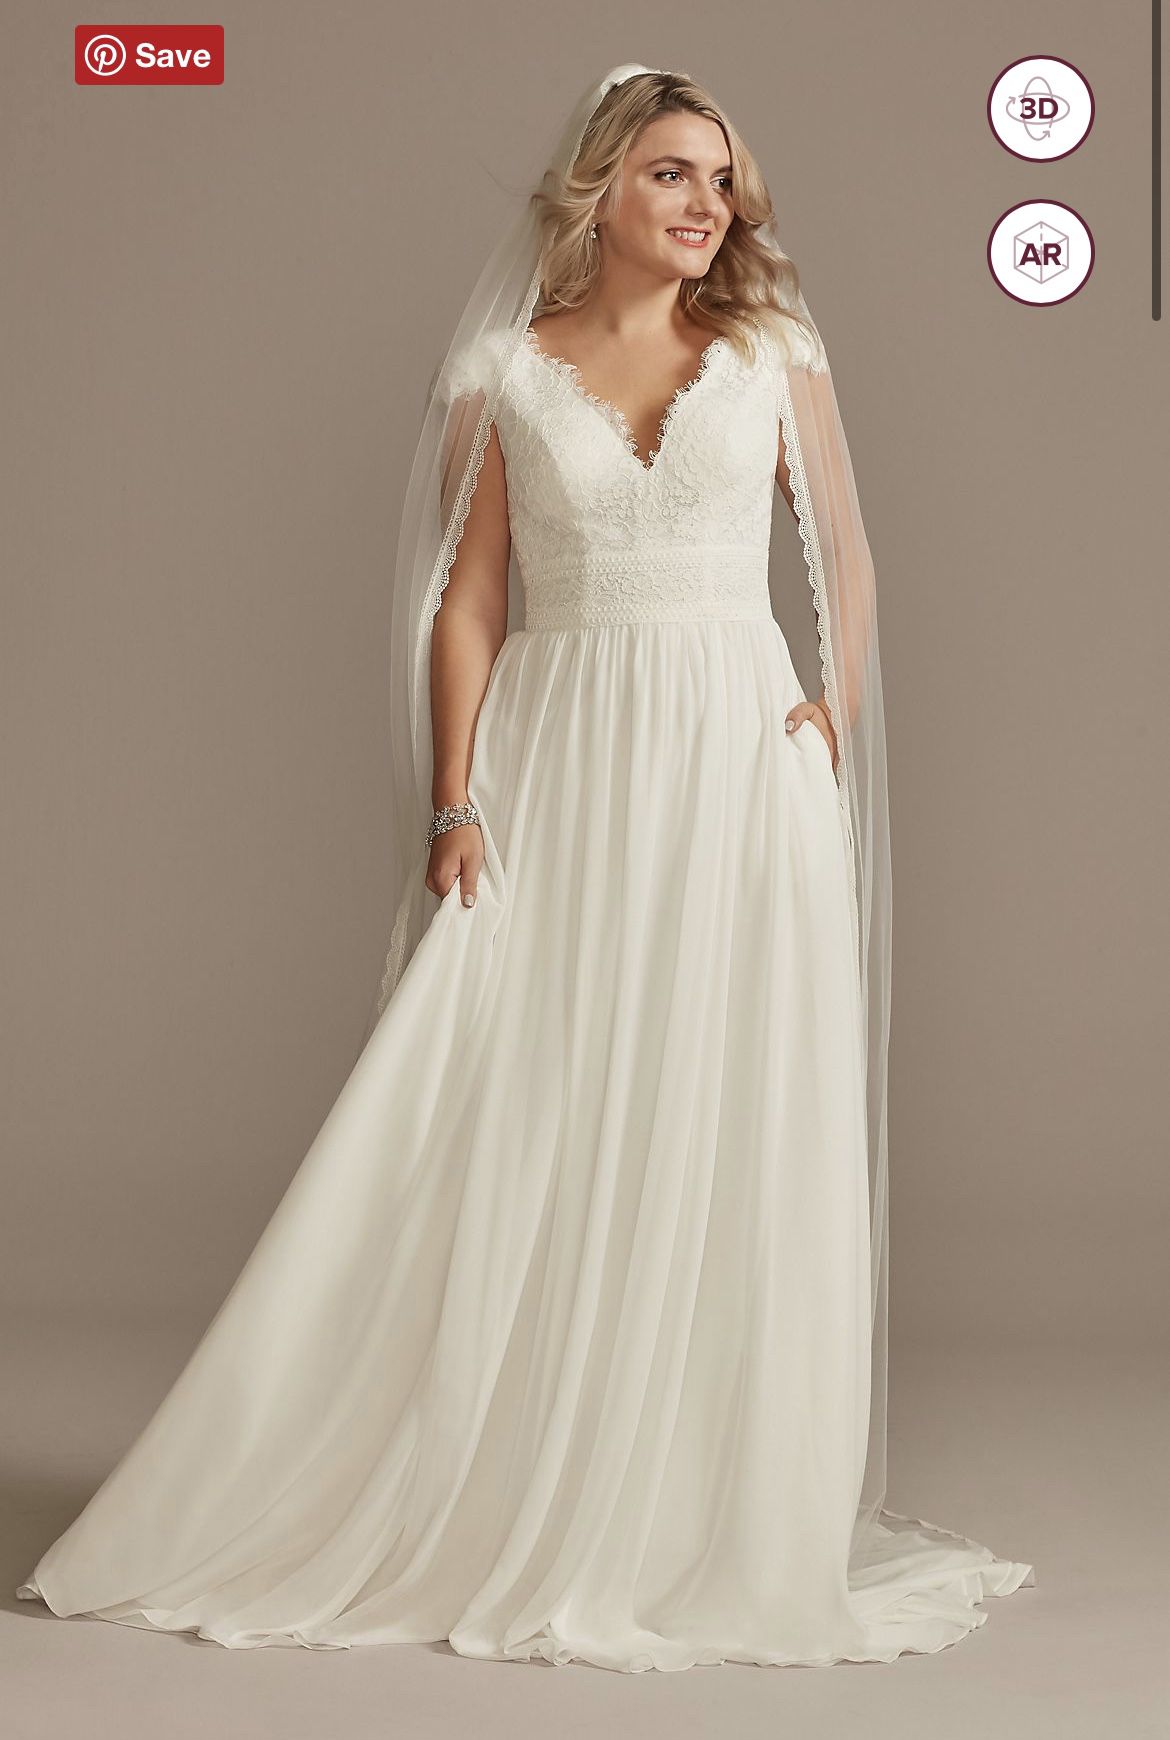 Lace Illusion Back Chiffon Wedding Dress - Davids Bridal Size 12 (fits like Size 6-8)